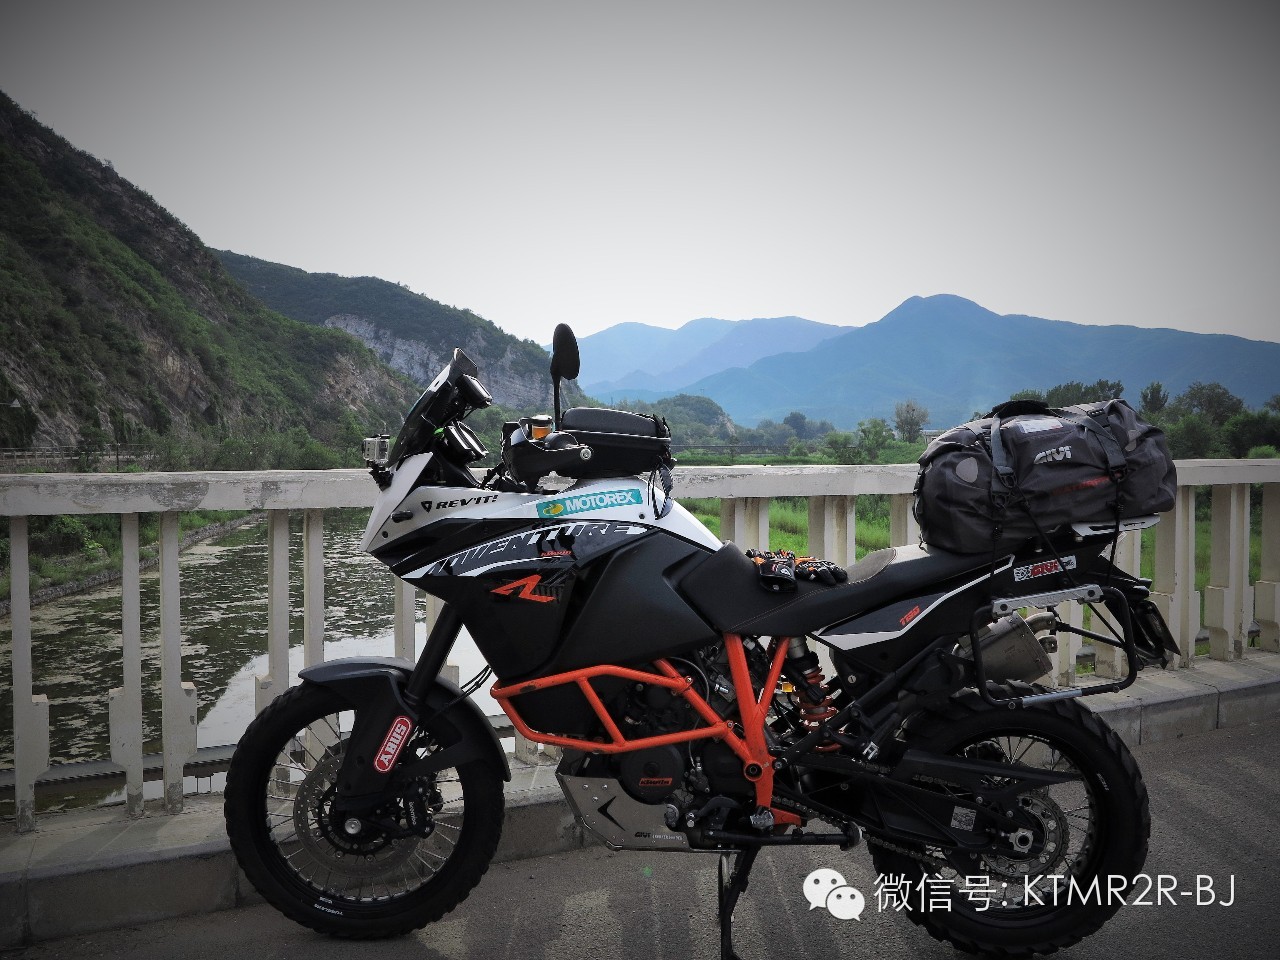 KTM大野驴与GS小伙伴们的北京周边探路之行（上）